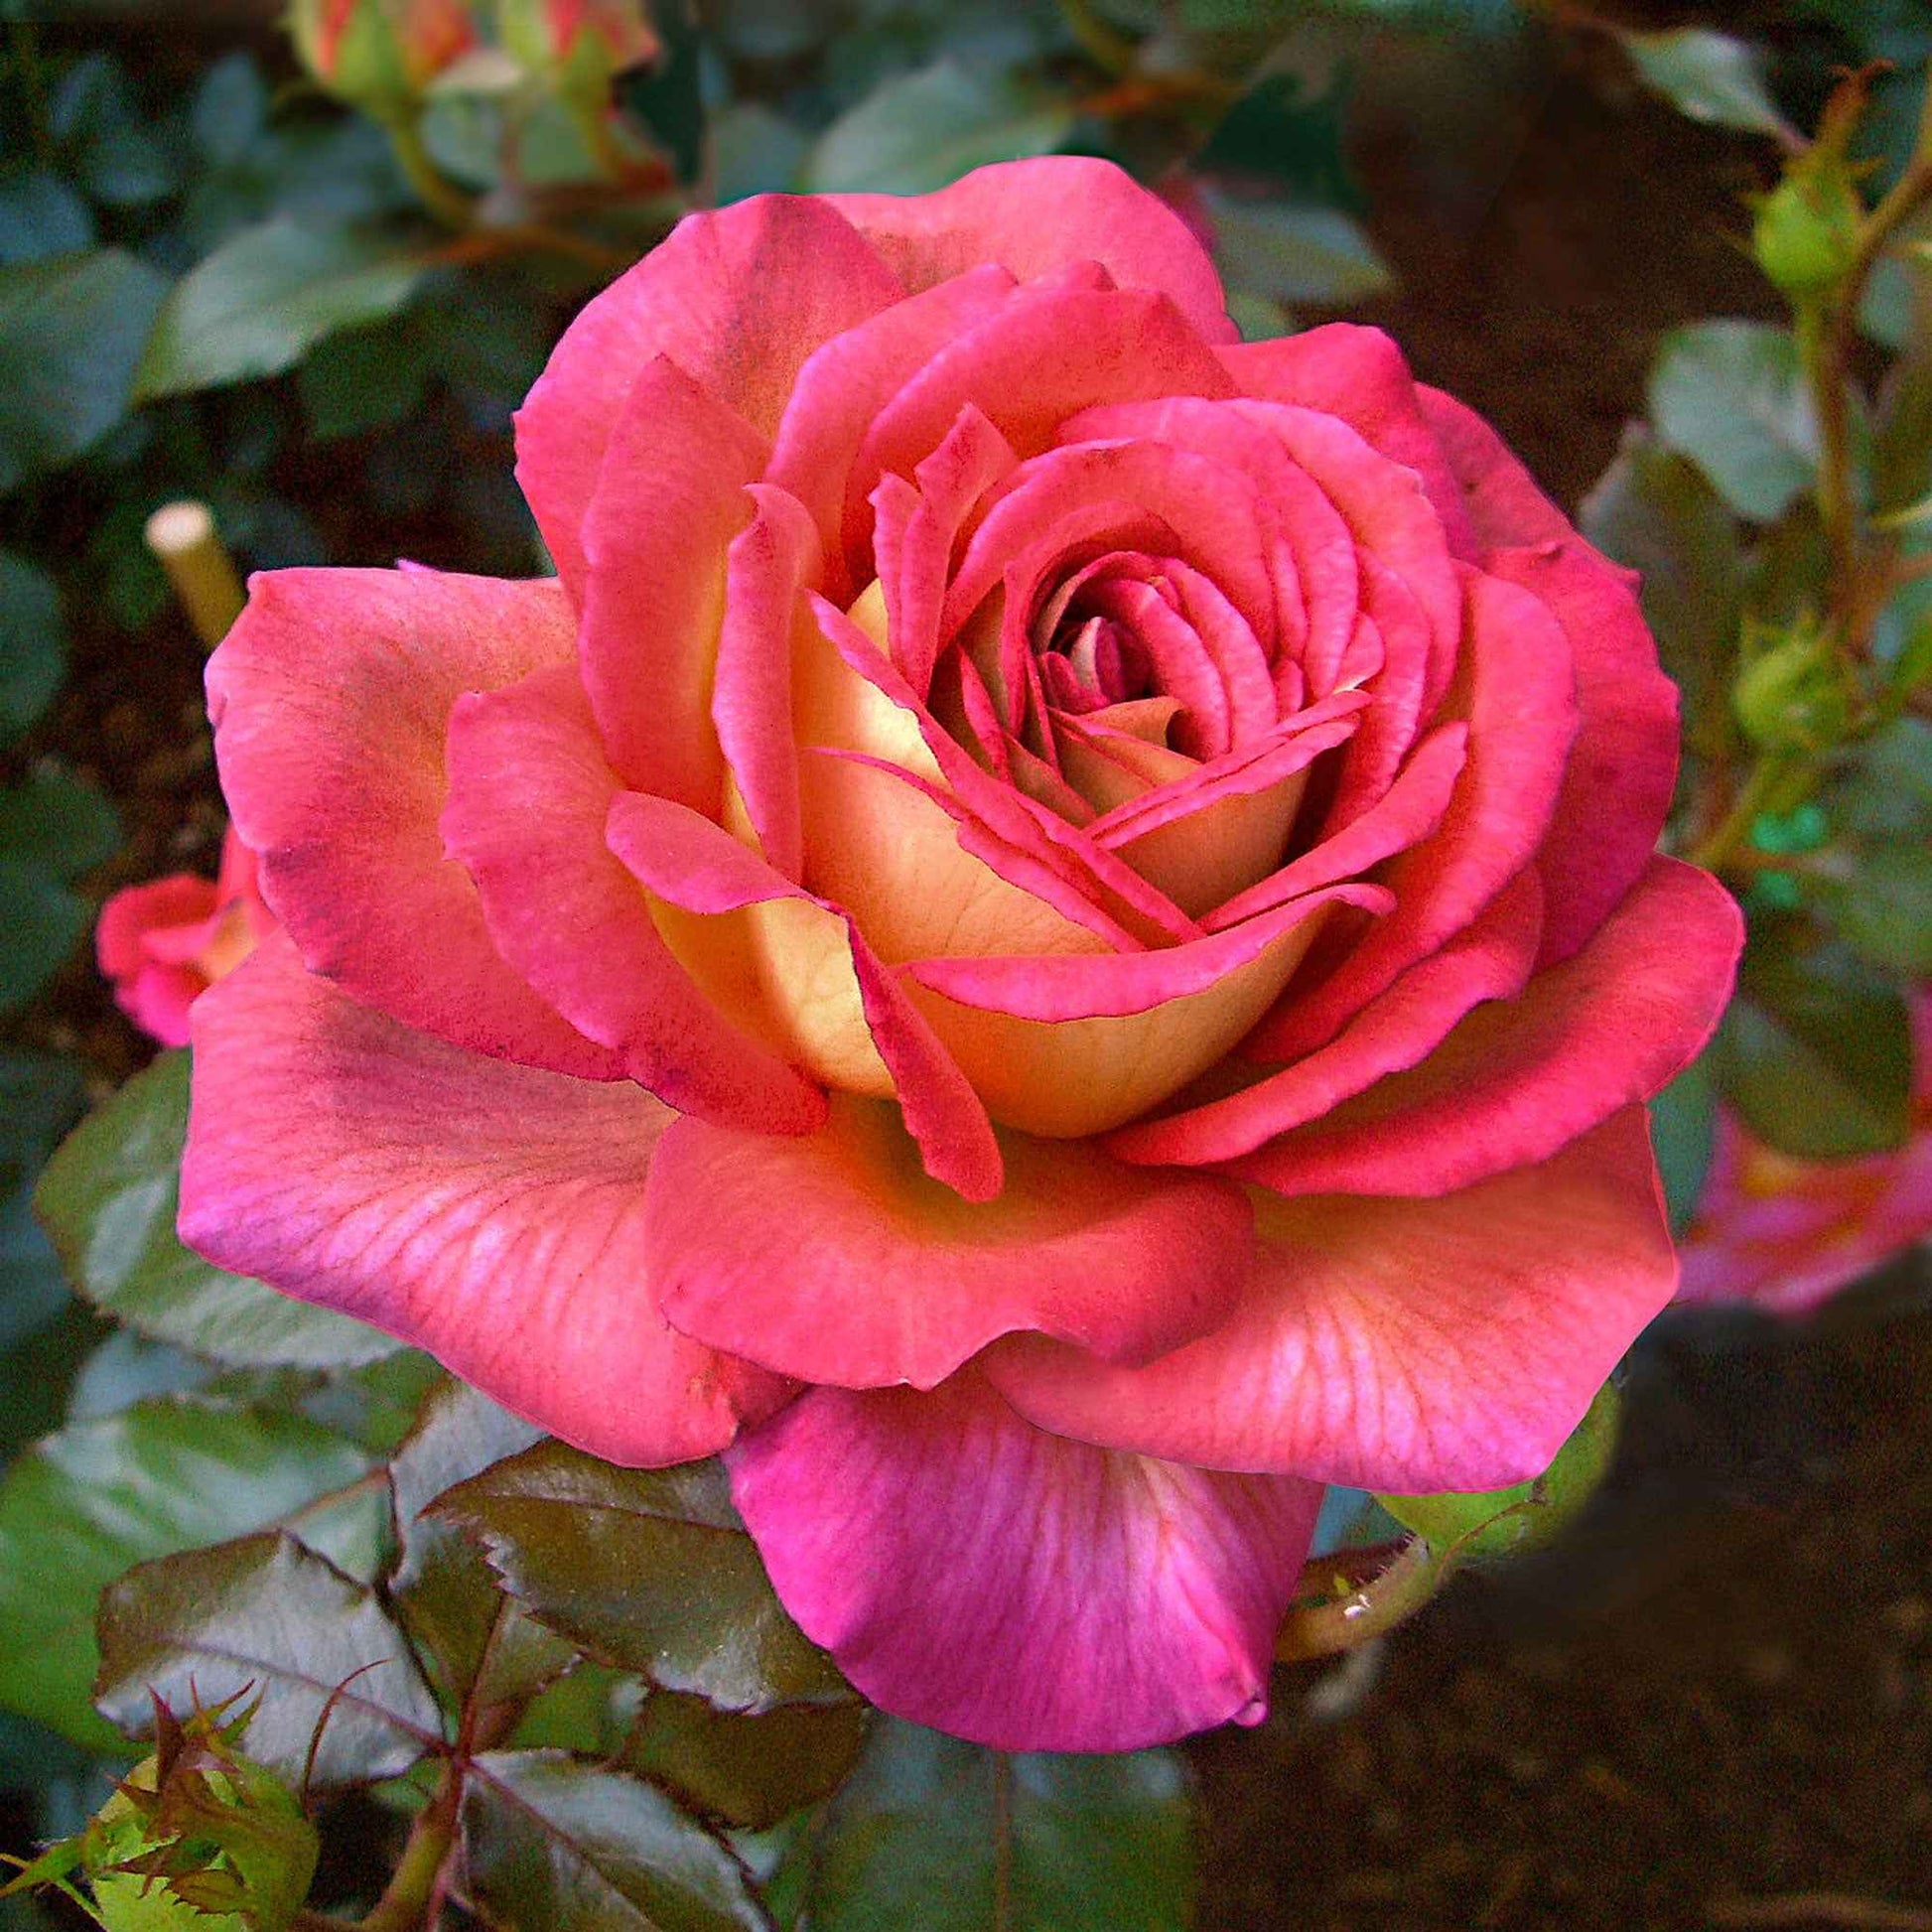 3x Grootbloemige roos  Rosa 'Parfum de Grasse'® Roze-Geel  - Bare rooted - Winterhard - Grootbloemige rozen